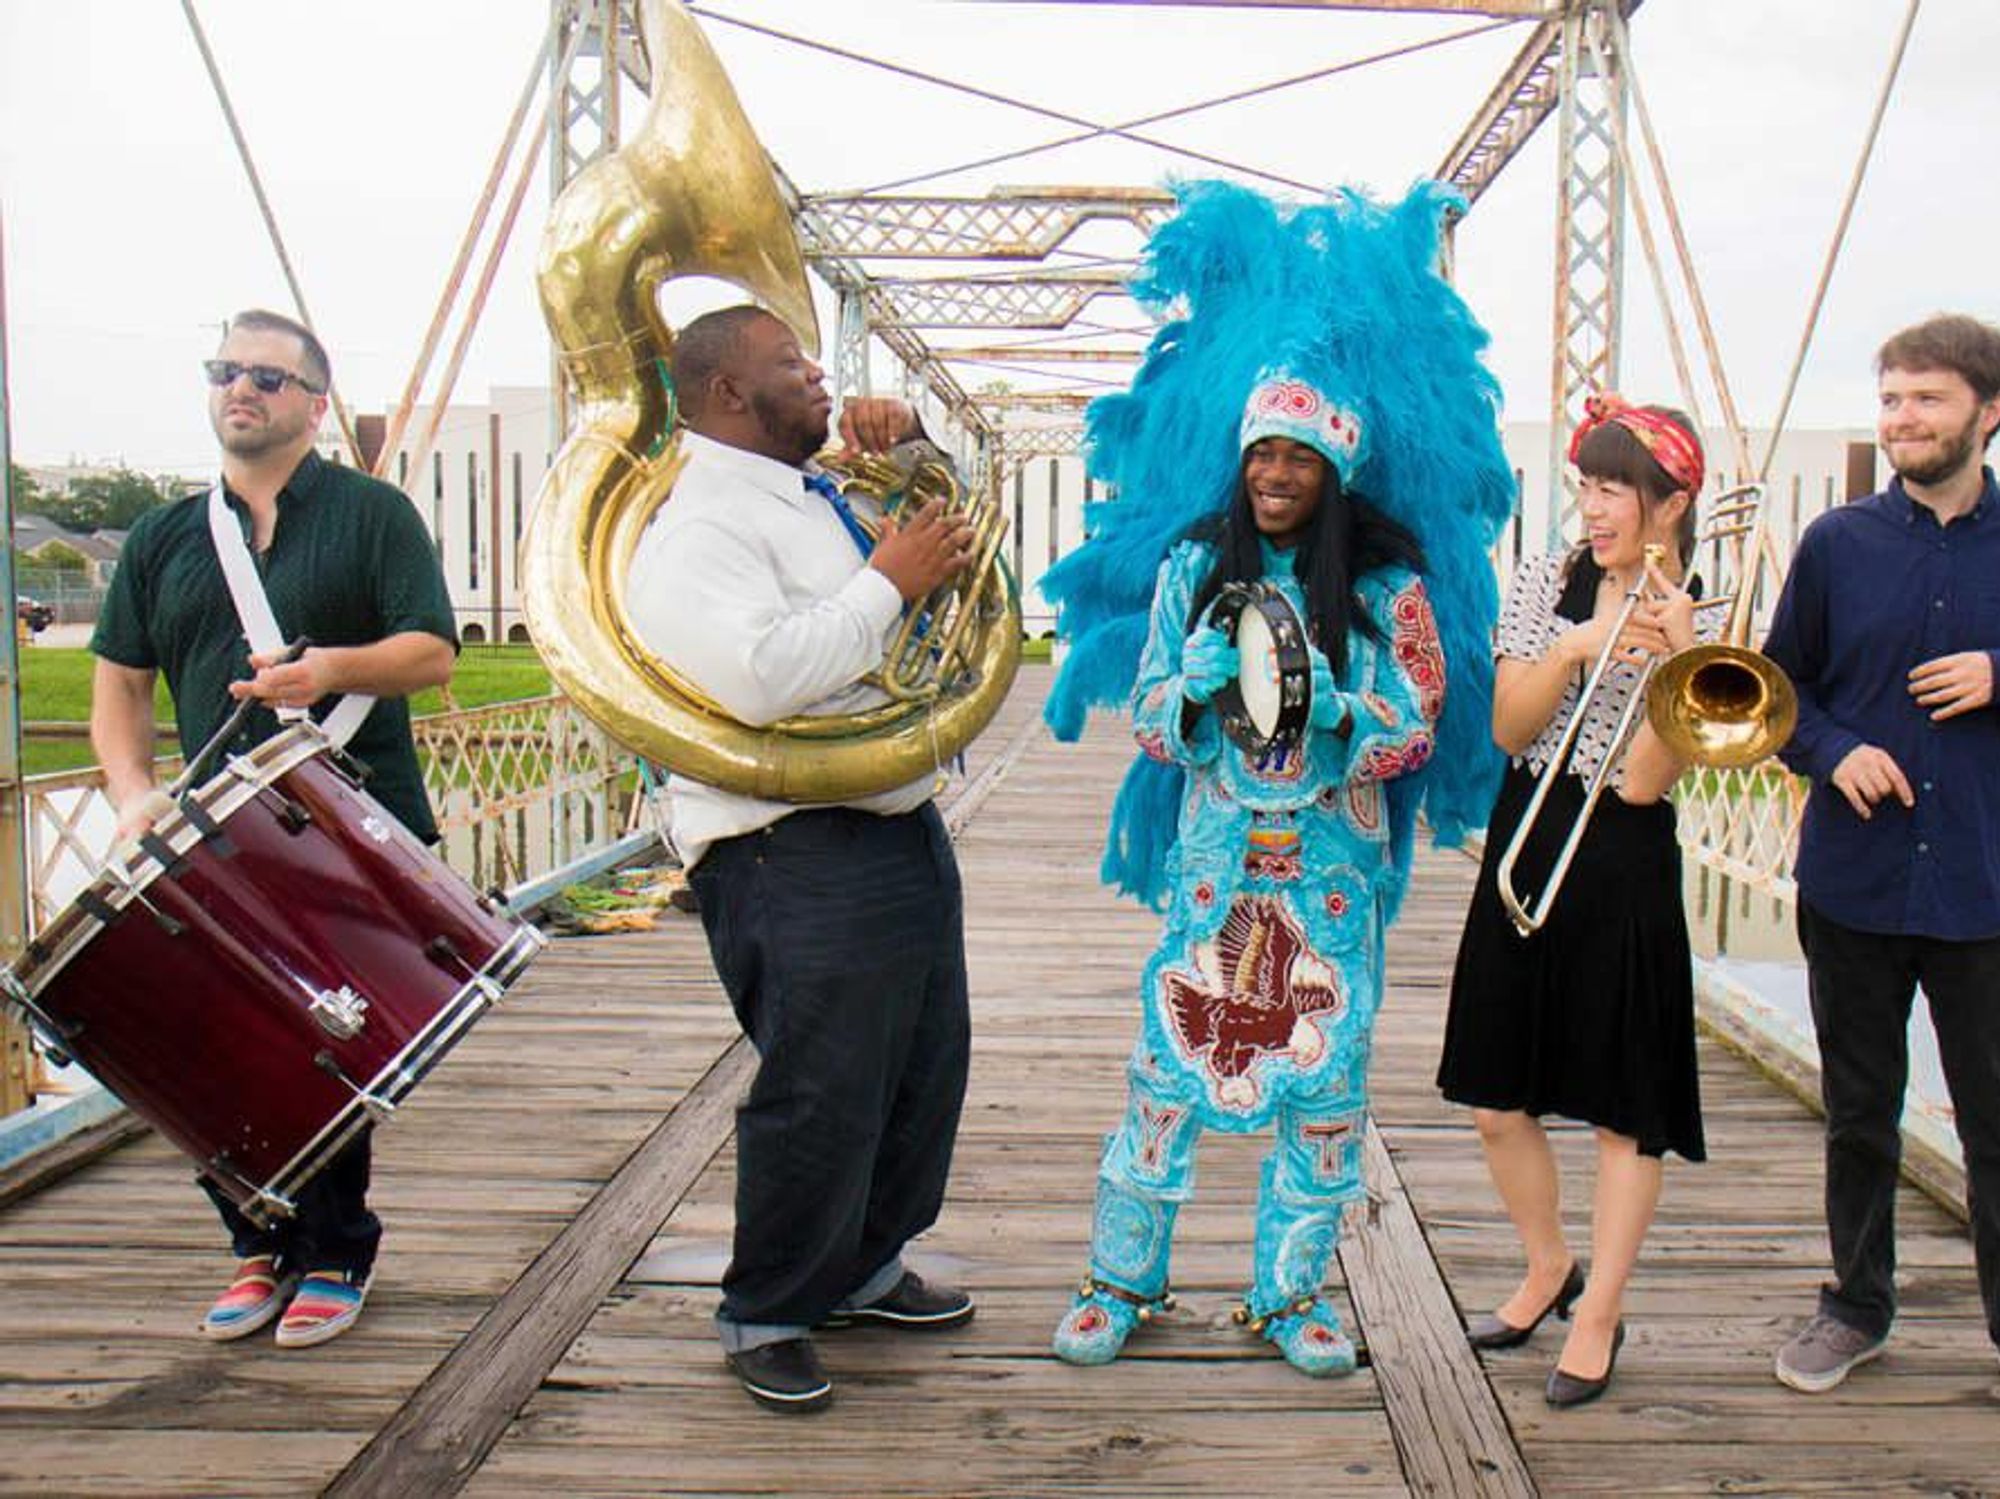 Cha Wa band New Orleans